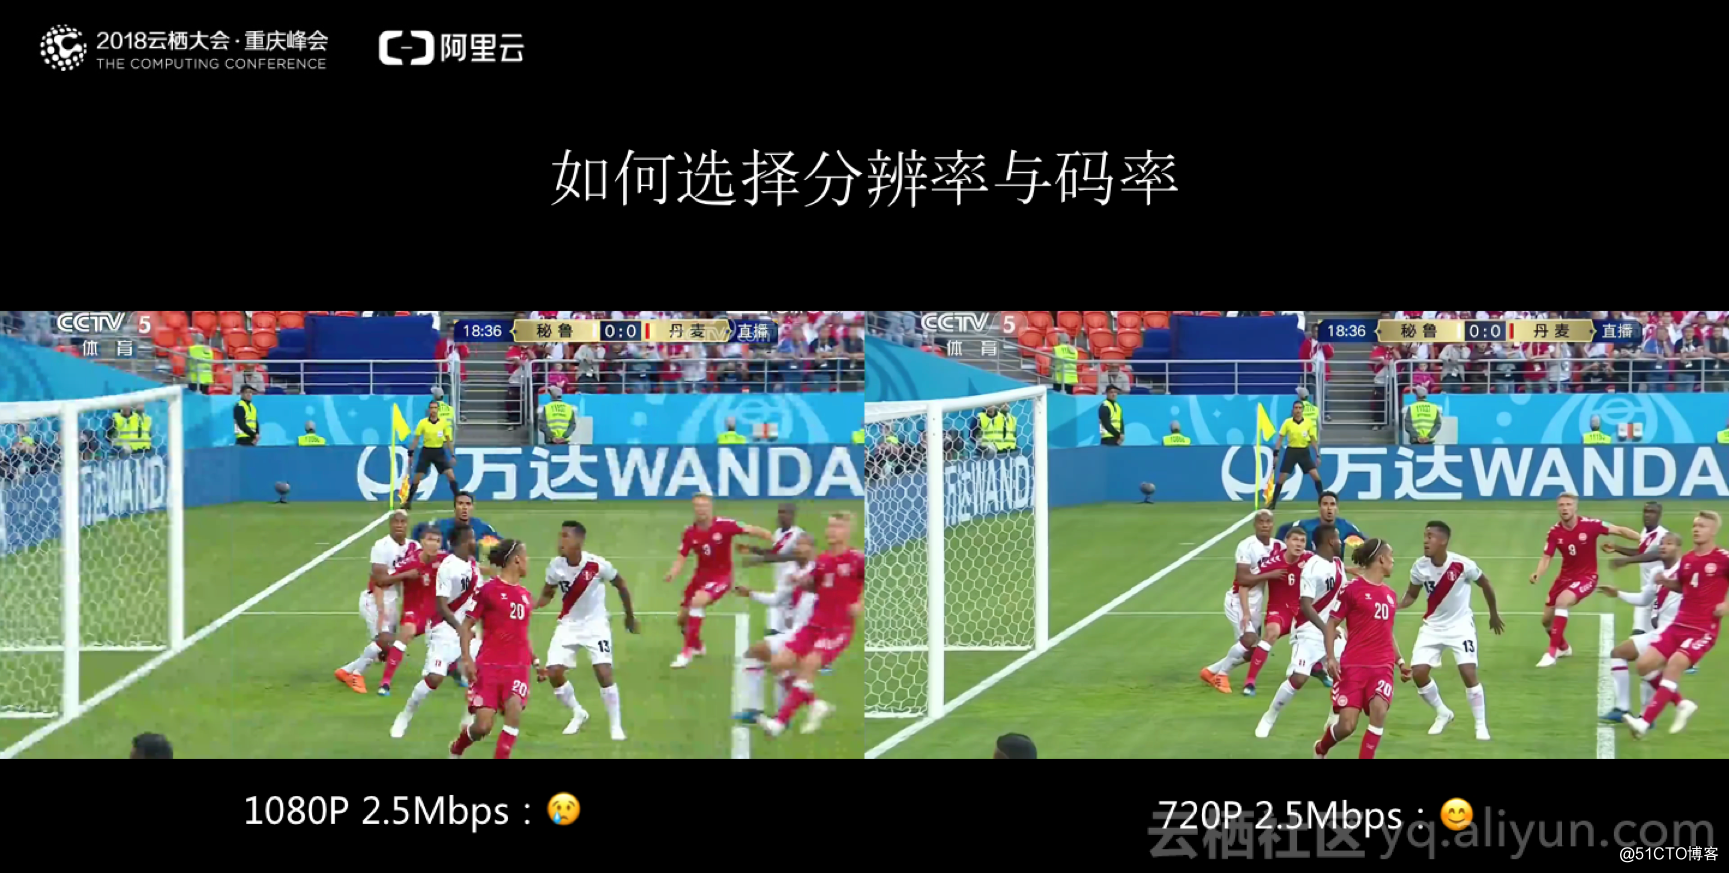 解析世界杯超大规模直播场景下的码率控制